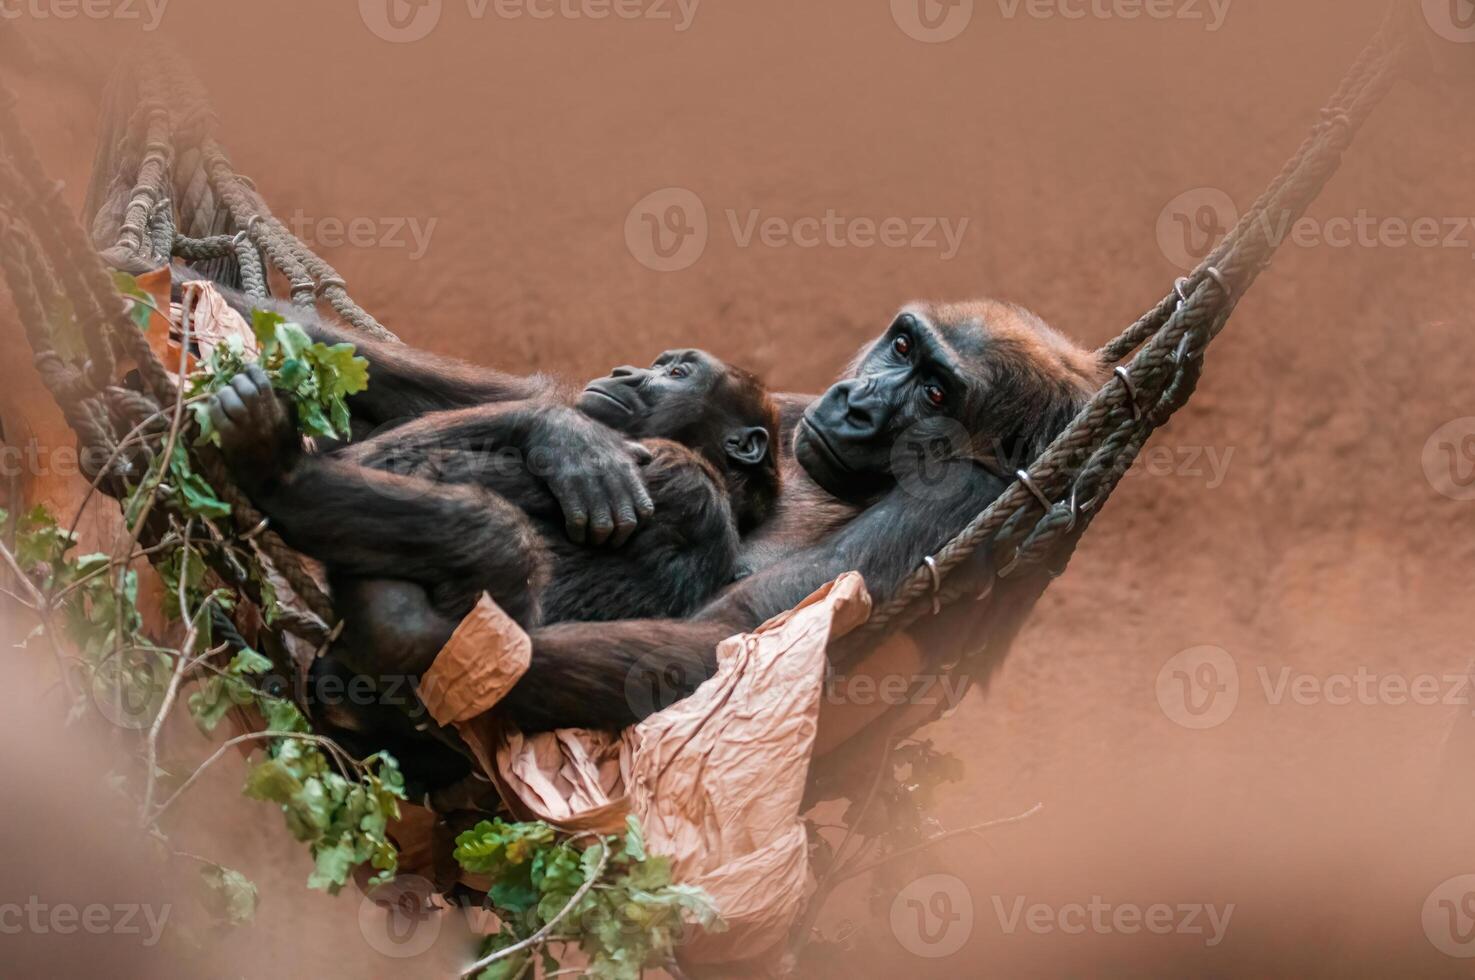 jovem gorila criança abraço com dele mãe foto